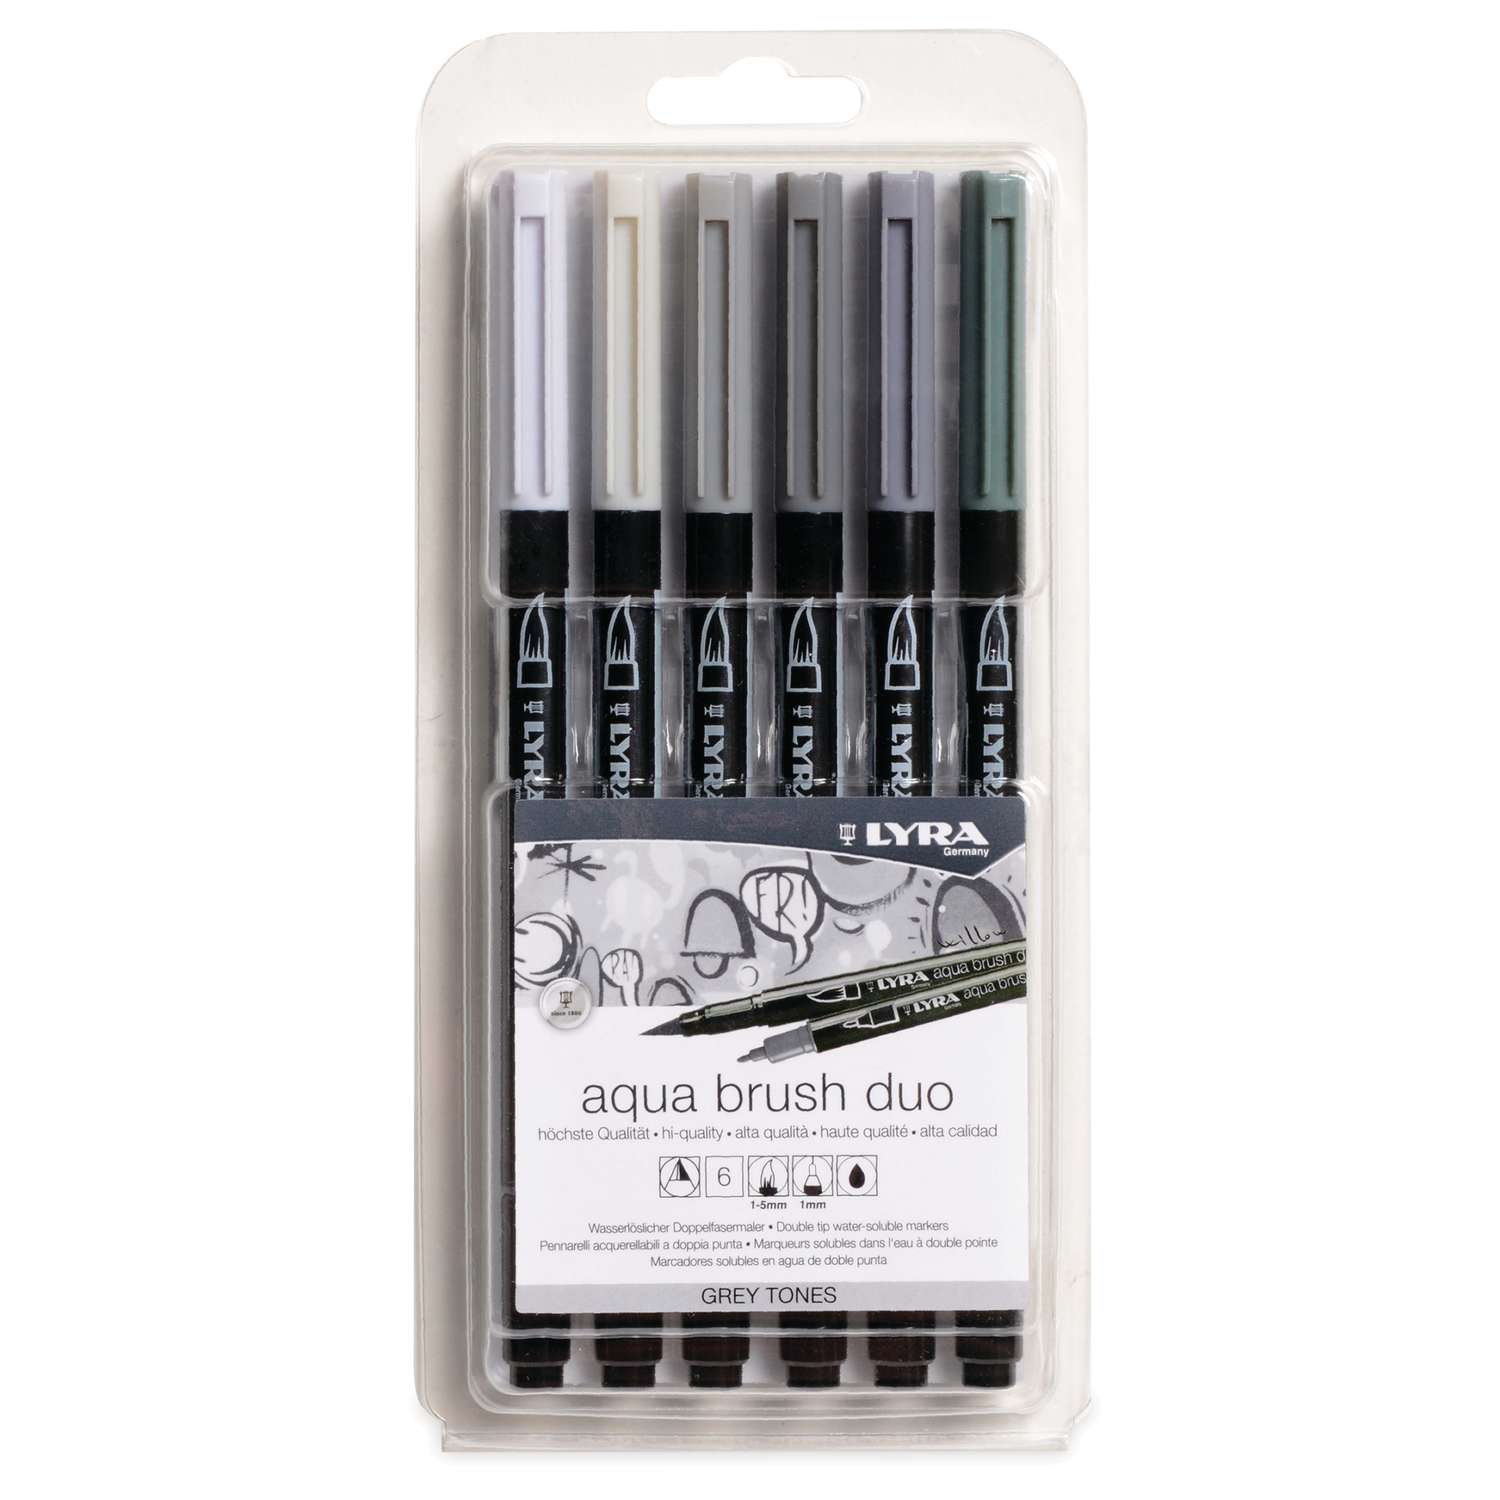 Dual Marker 80er Set Farben Brush Pens Permanent Stift Kunst Markers Filzstifte 